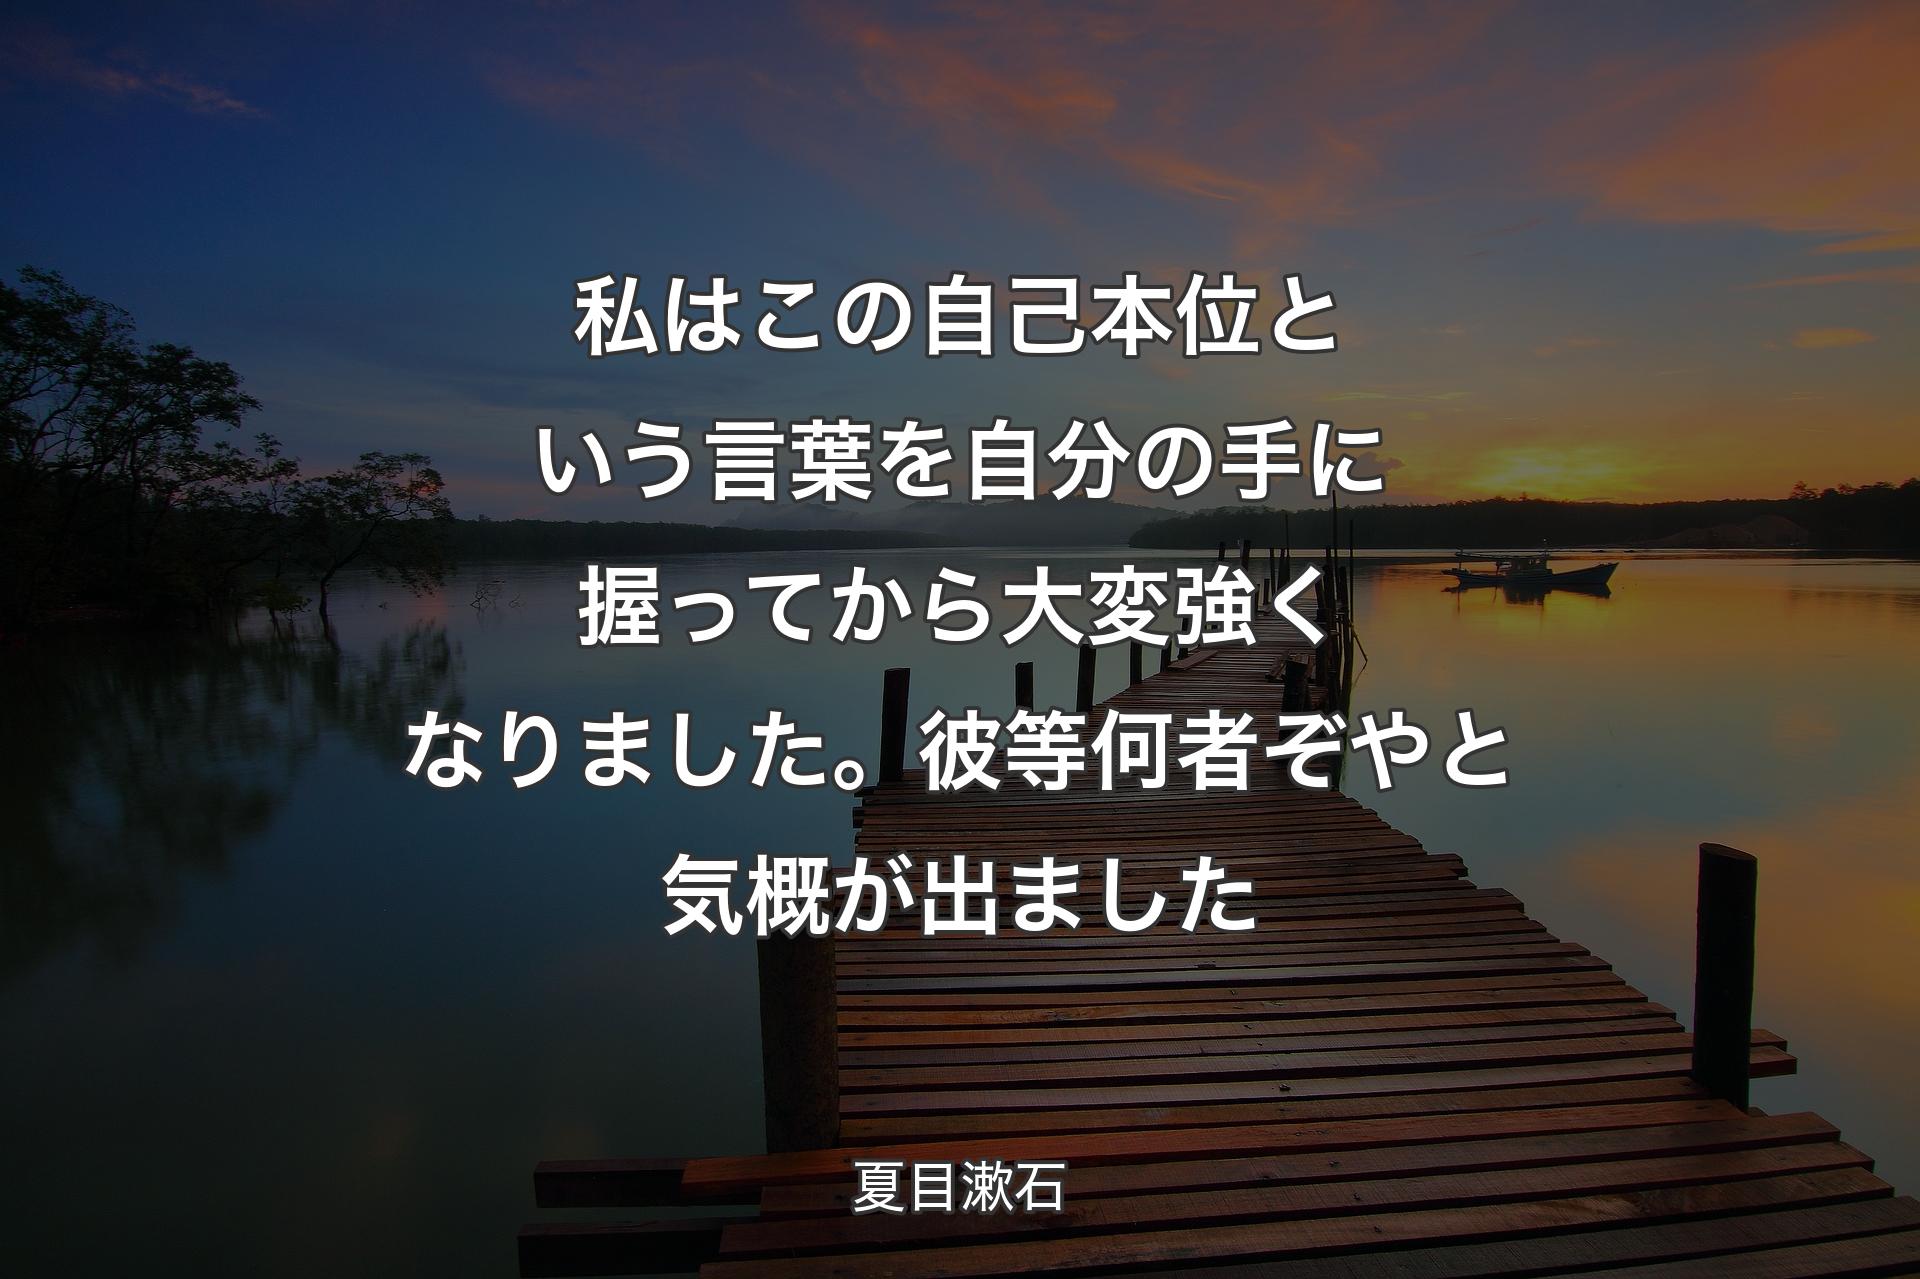 【背景3】私はこの自己本位という言葉を自分の手に握ってから大変強くなりました。彼等何者ぞやと気概が出ました - 夏目漱石